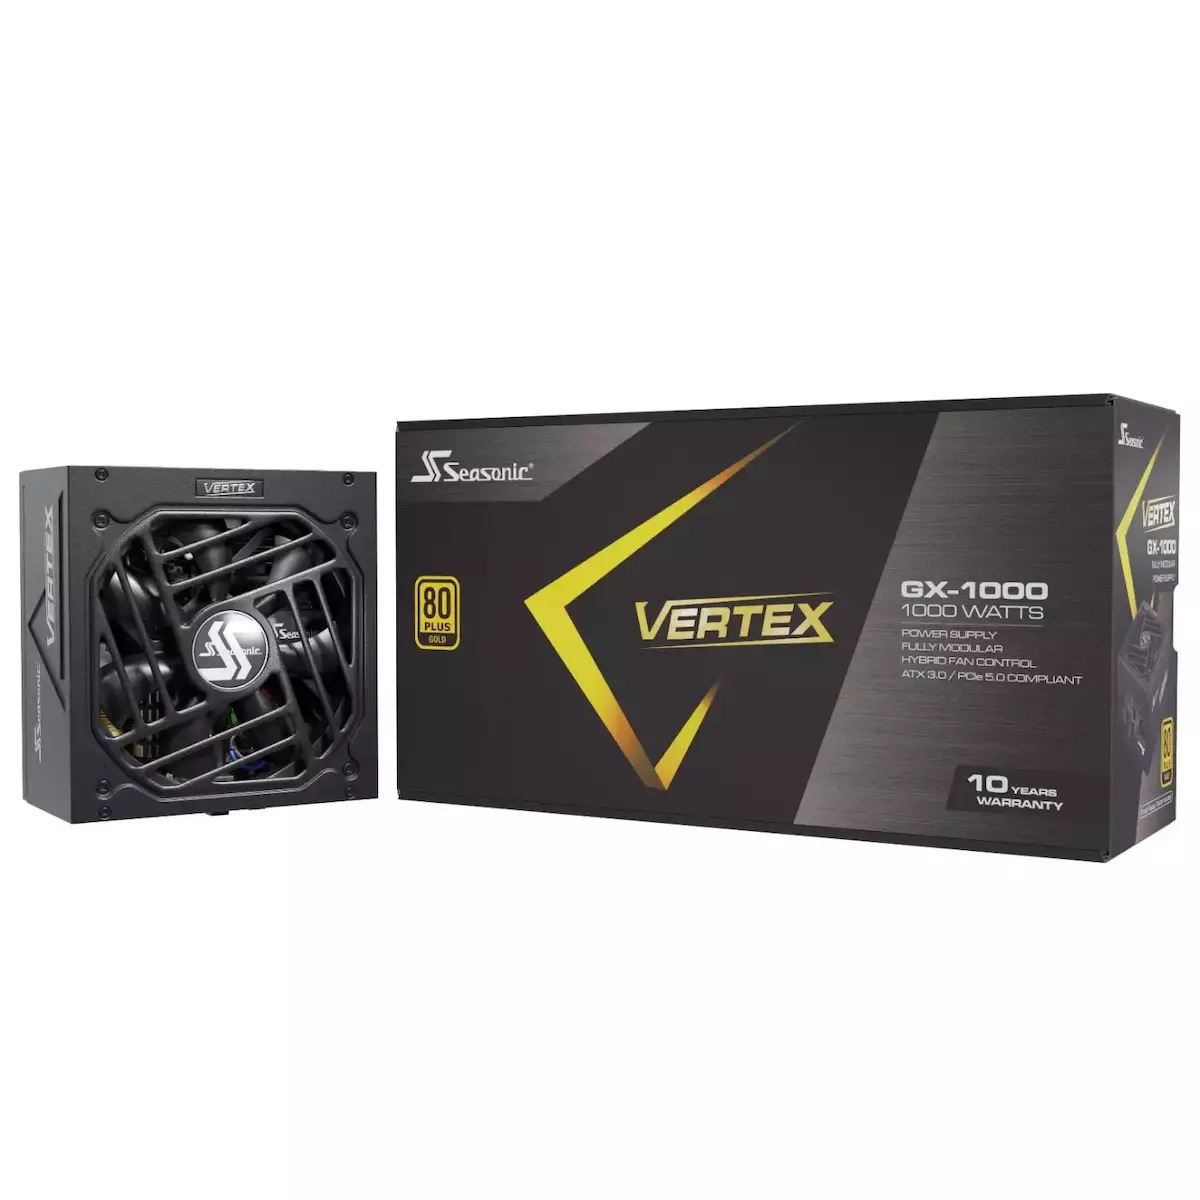 Seasonic Vertex GX 1000W Τροφοδοτικό Υπολογιστή Full Modular 80 Plus Gold